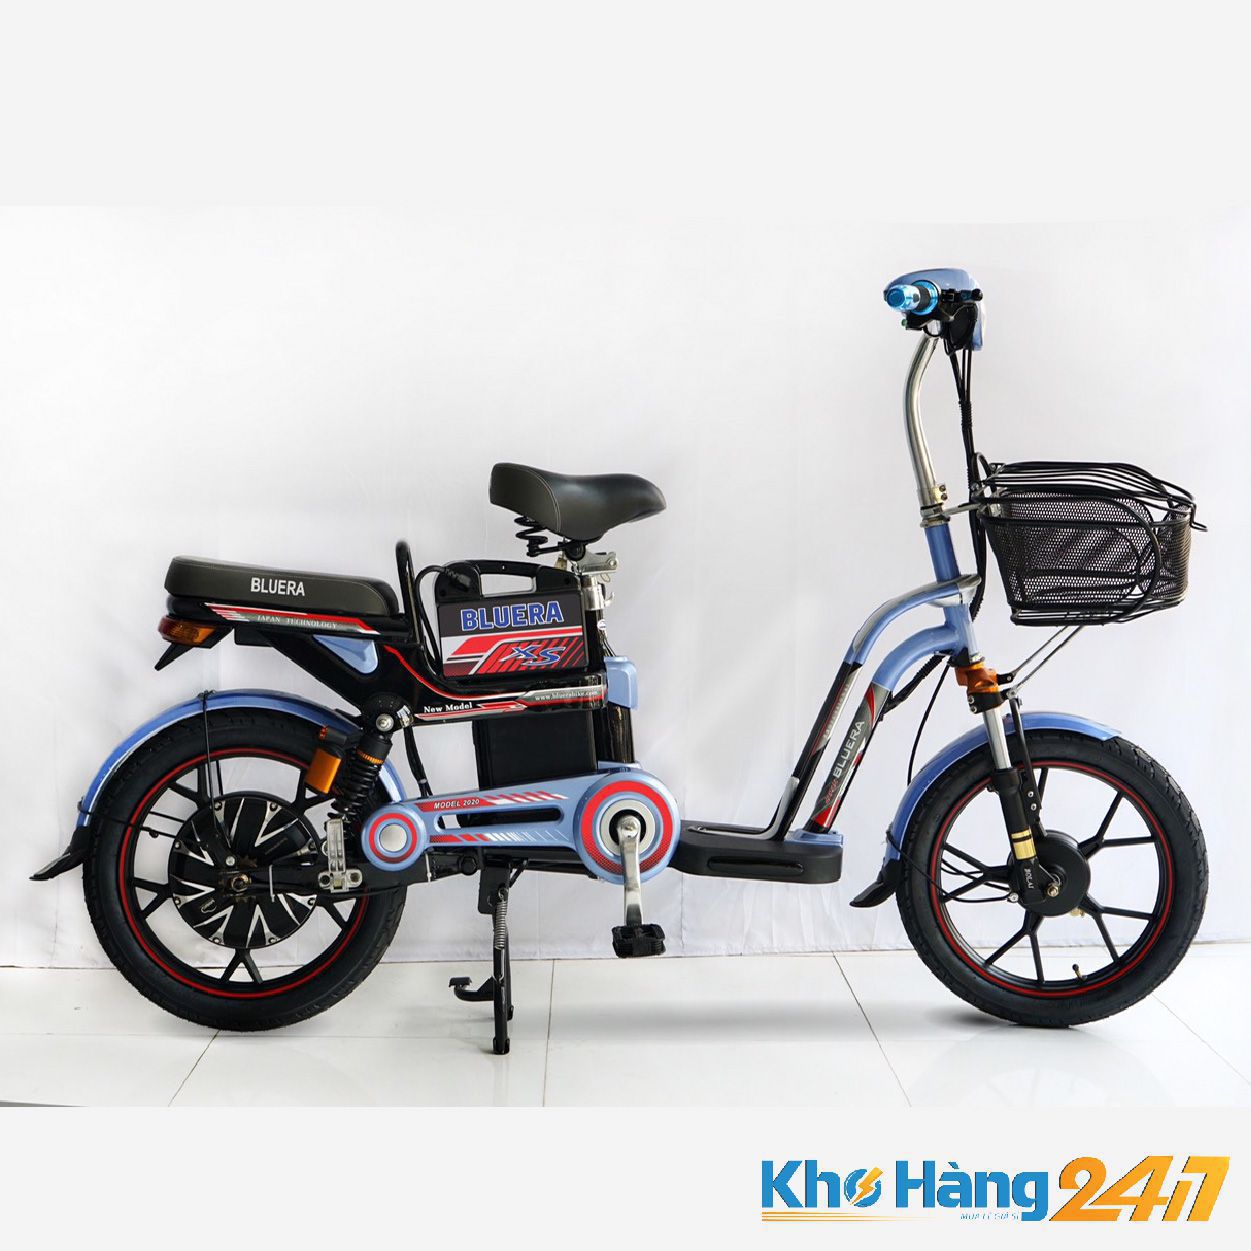 Mua xe đạp điện mới giá rẻ tại Khohang247.com